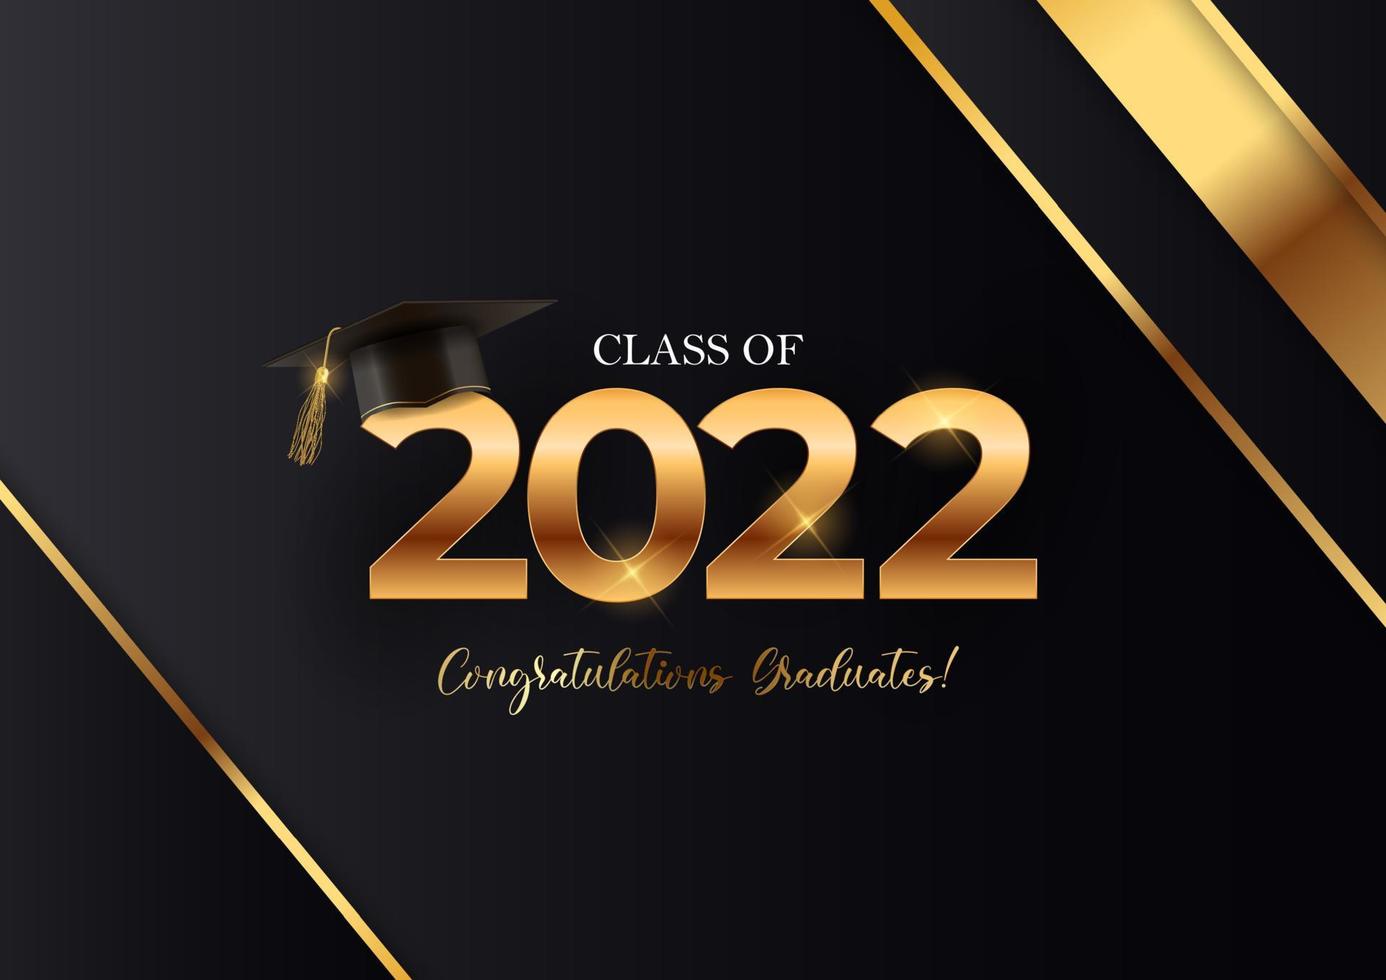 biglietto di auguri per laureati congratulazioni classe 2022. illustrazione vettoriale